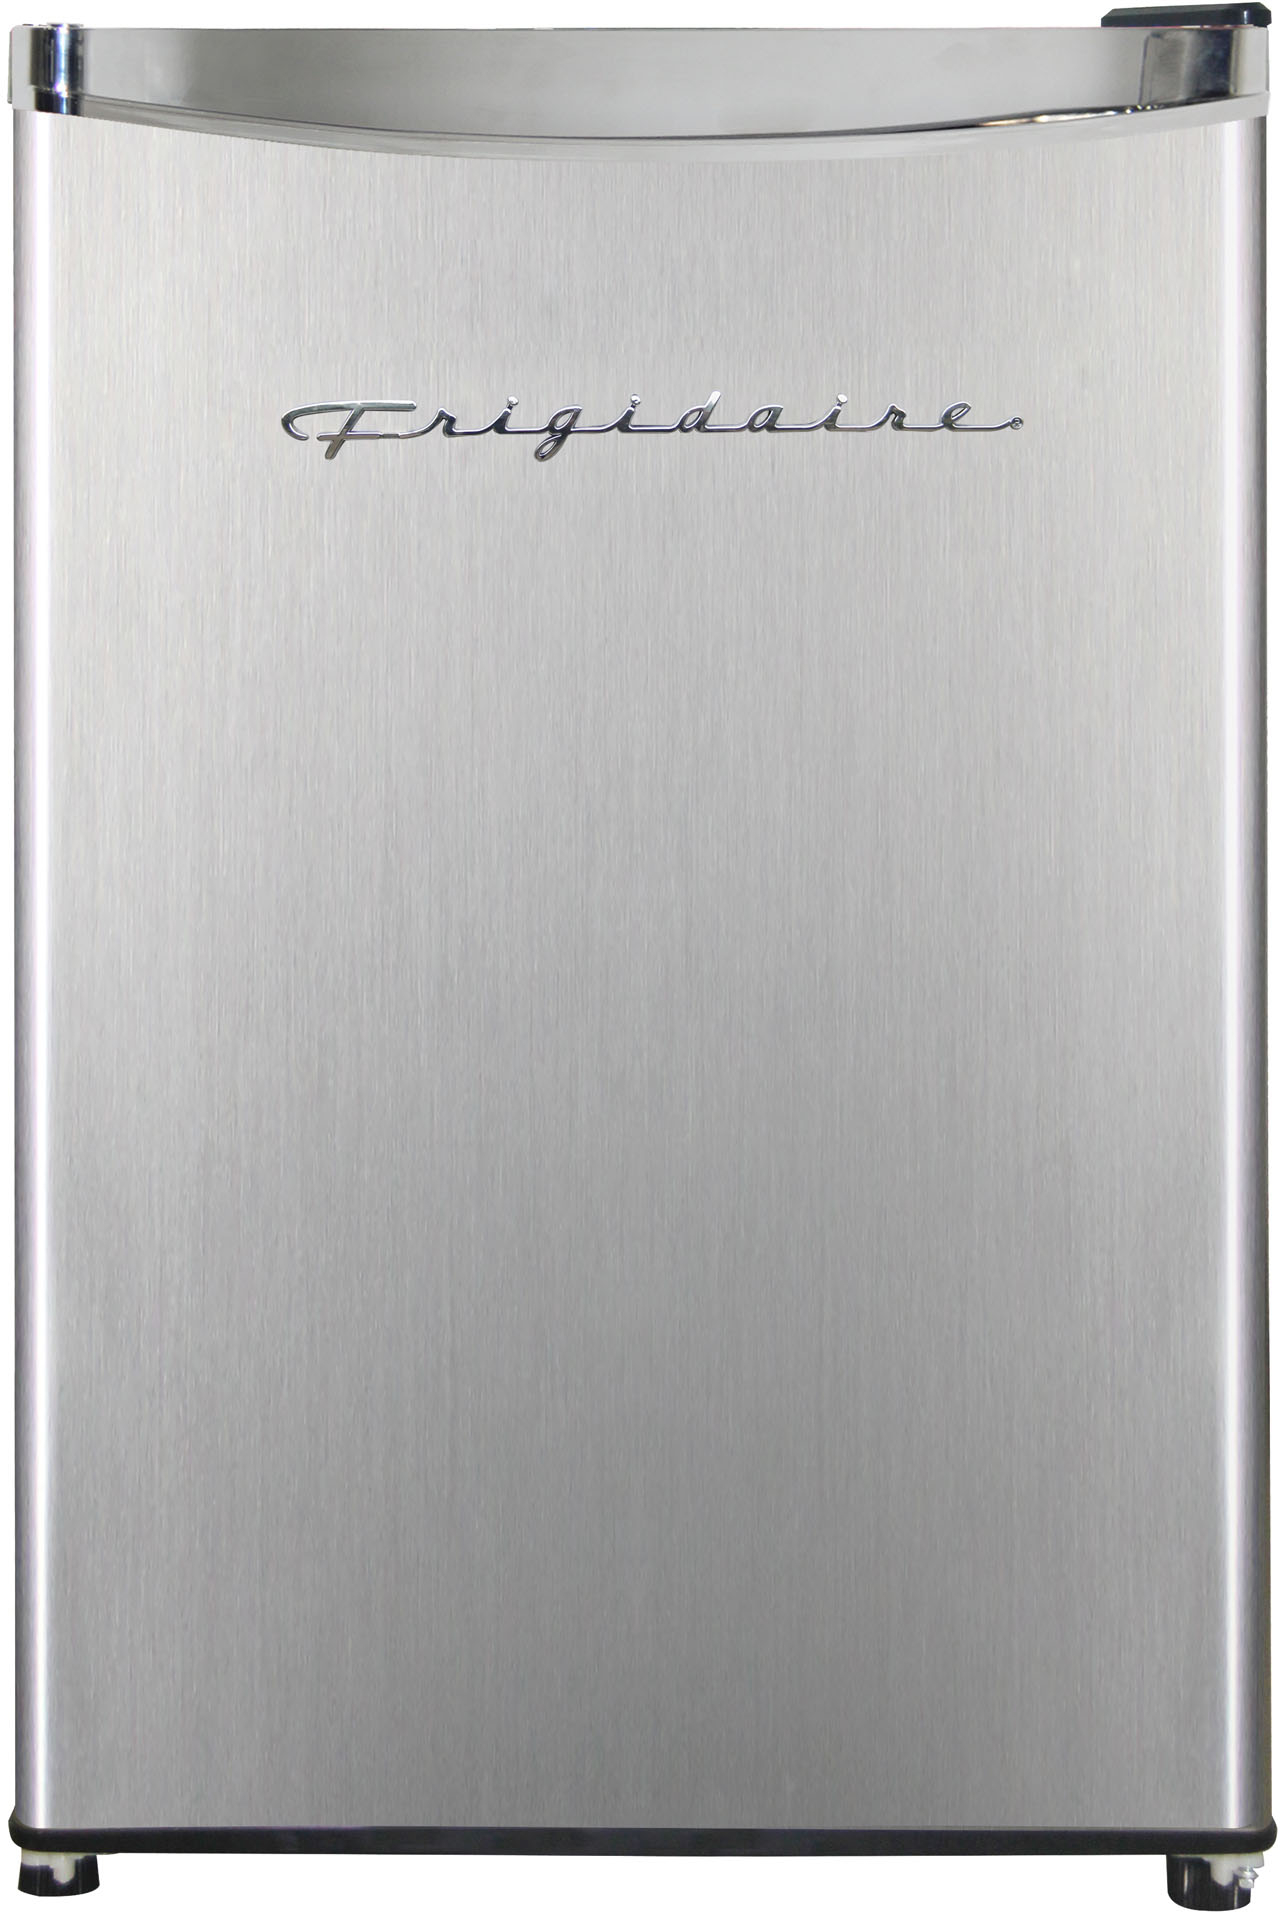 Frigidaire EFR341, 3.2 Cu ft 2 Door Fridge and Freezer, Platinum Series, Stainless Steel, Double